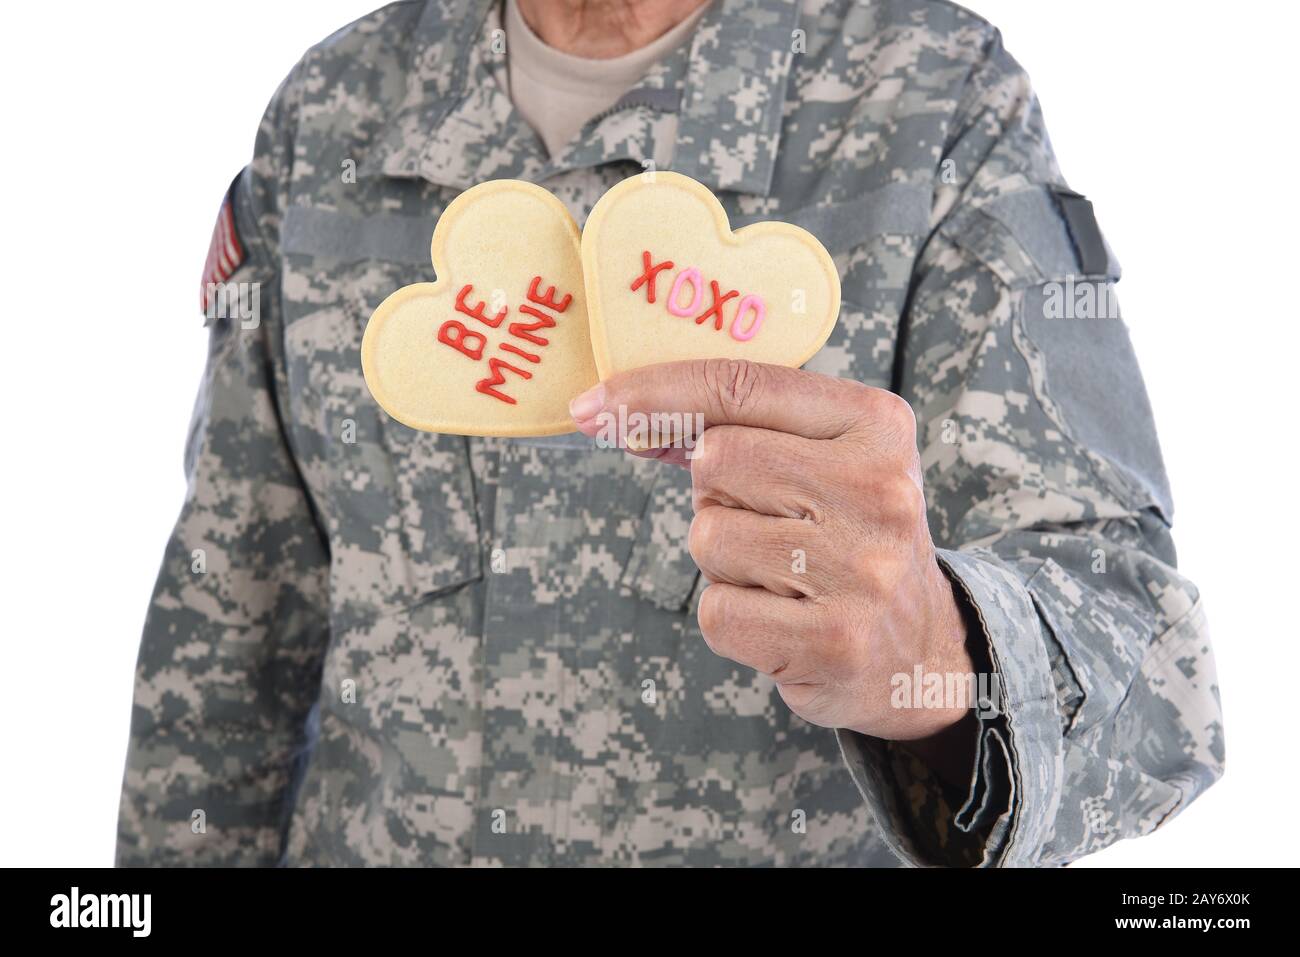 Nahaufnahme eines Soldaten, der zwei Herzförmige Valentins-Tageskekse in einer Hand hält, mit den Worten Sei Meine und XOXO in rotem Icing geschrieben. Stockfoto